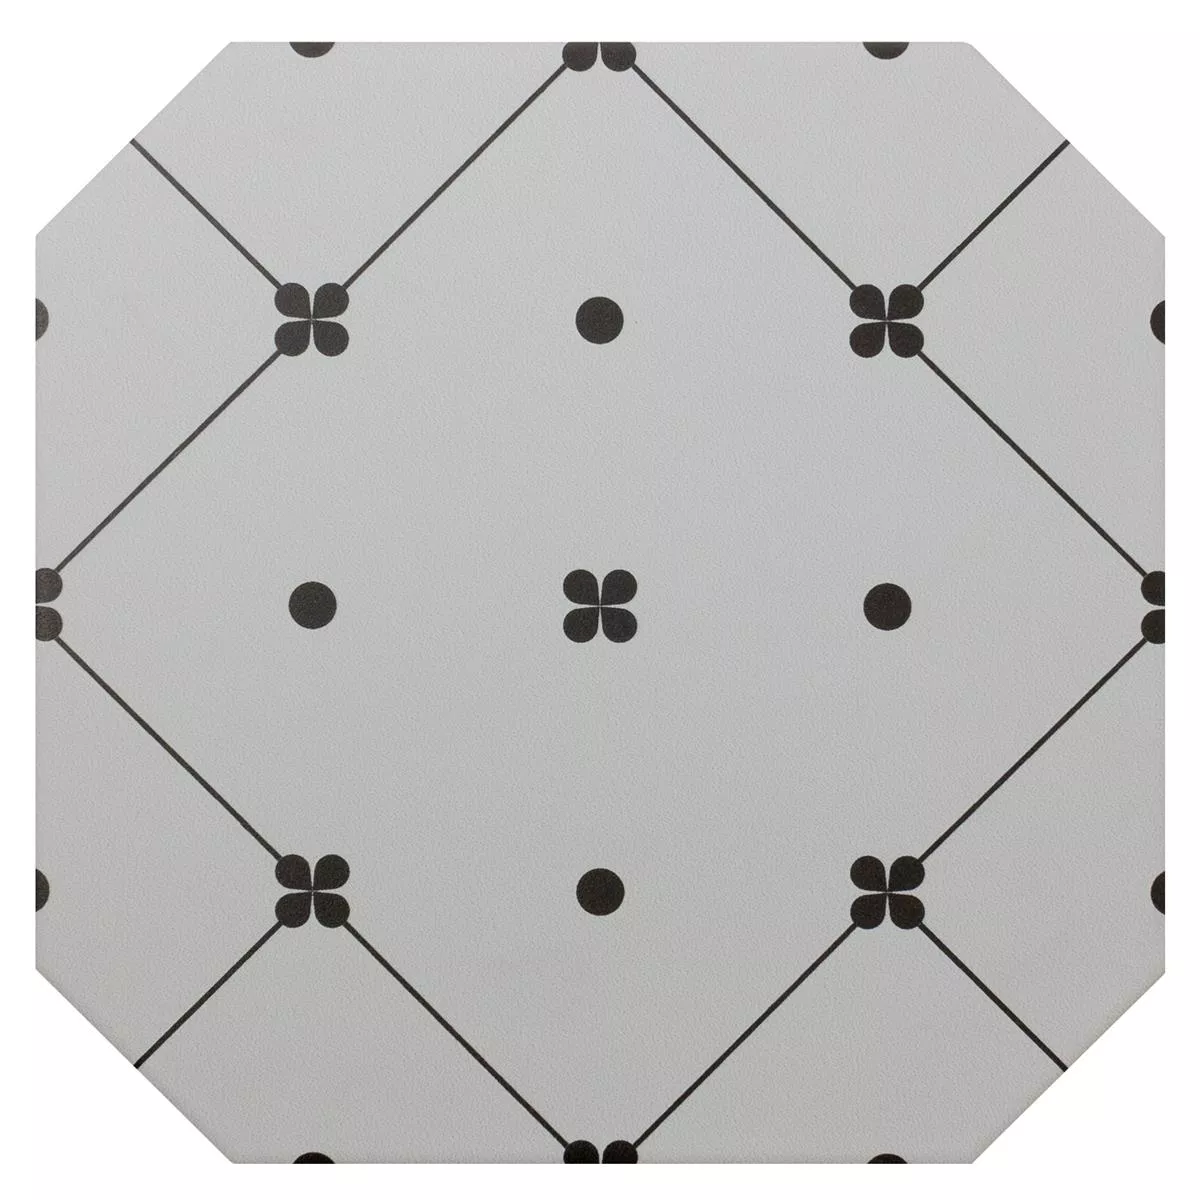 Sample from Porcelain Stoneware Tiles Genexia Black Blanc Decor 3 Octagon 20x20cm